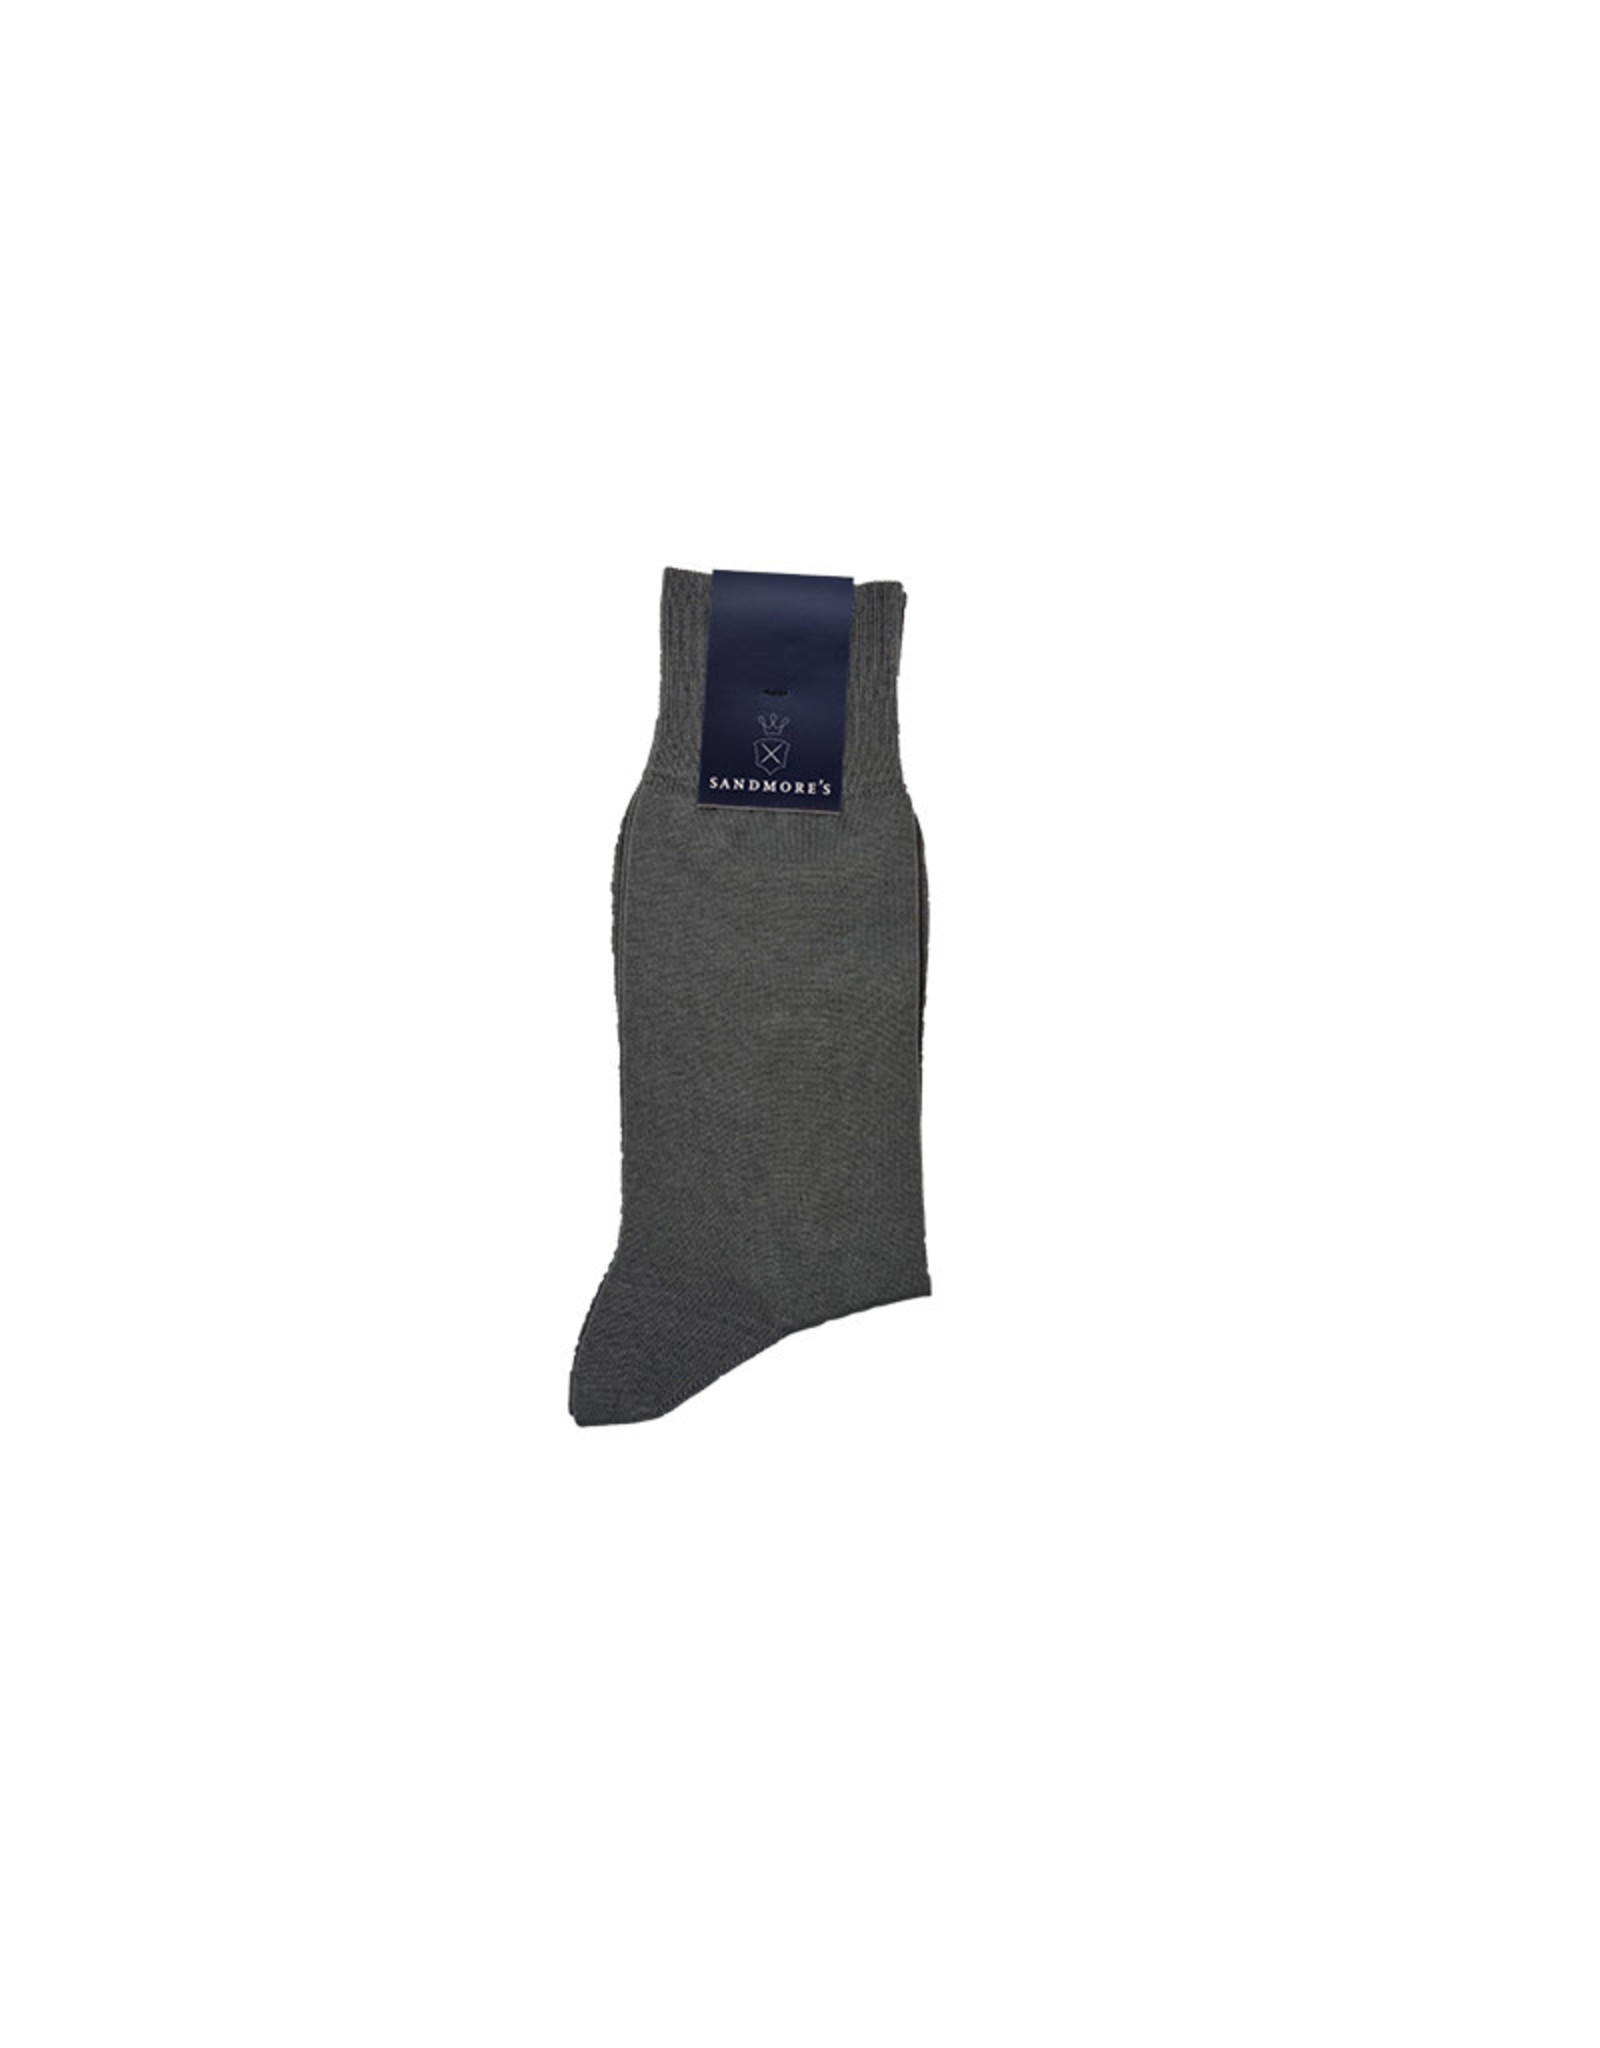 Russo Italia Sandmore's sokken katoen grijs M376